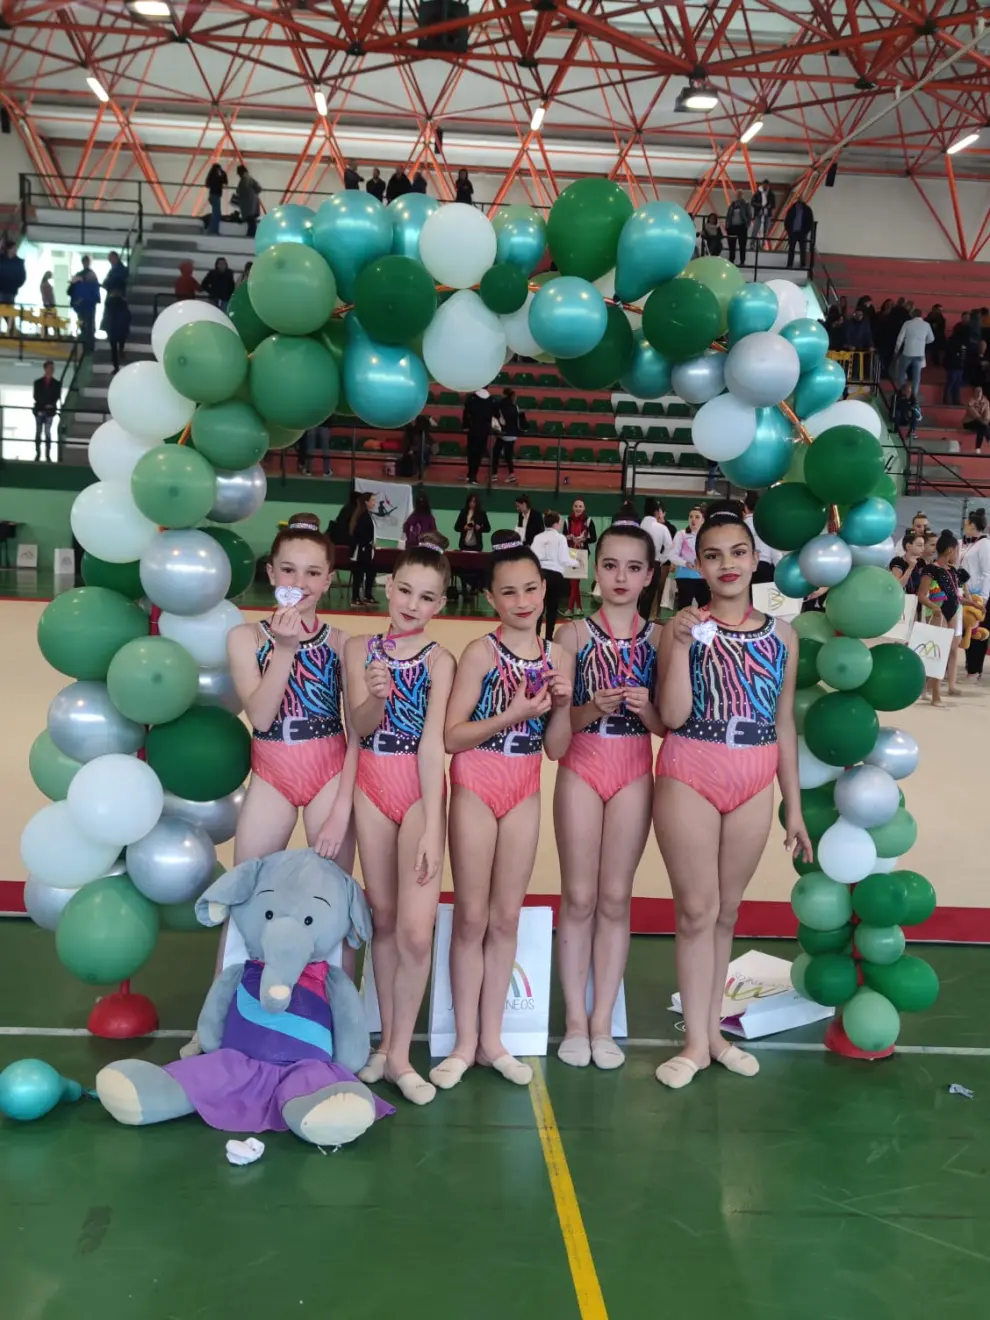 Cerca de 400 gimnastas se dieron cita en el polideportivo Olimpia para disputar el torneo anual organizado por el Club Jacetano GRD.